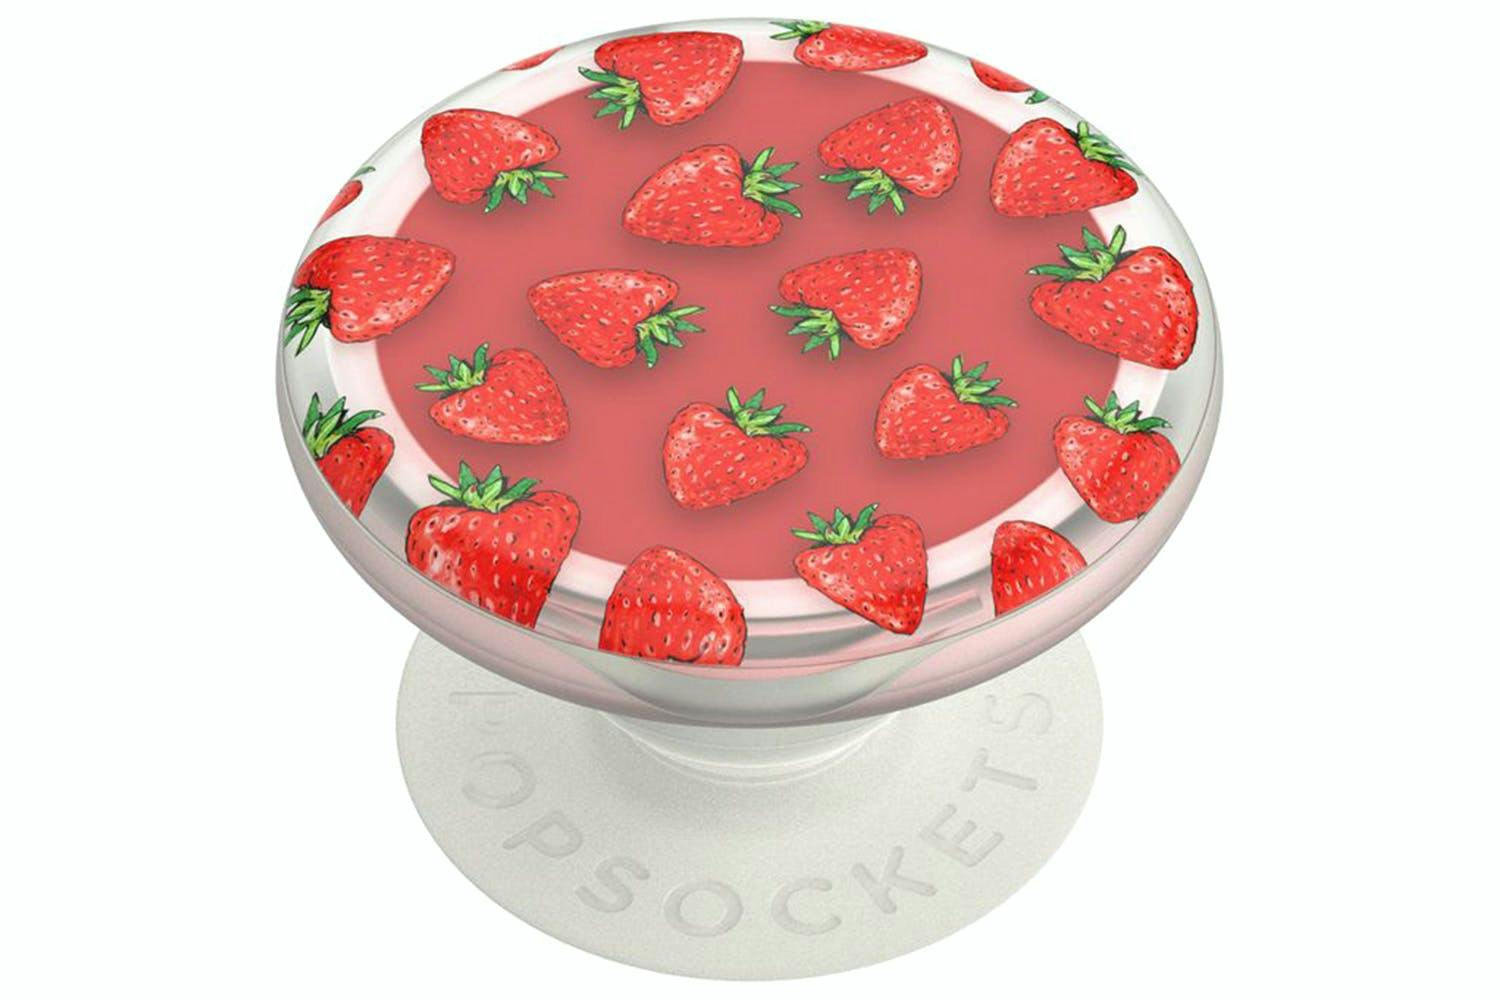 PopSockets PopGrip Lips Strawberry Feels